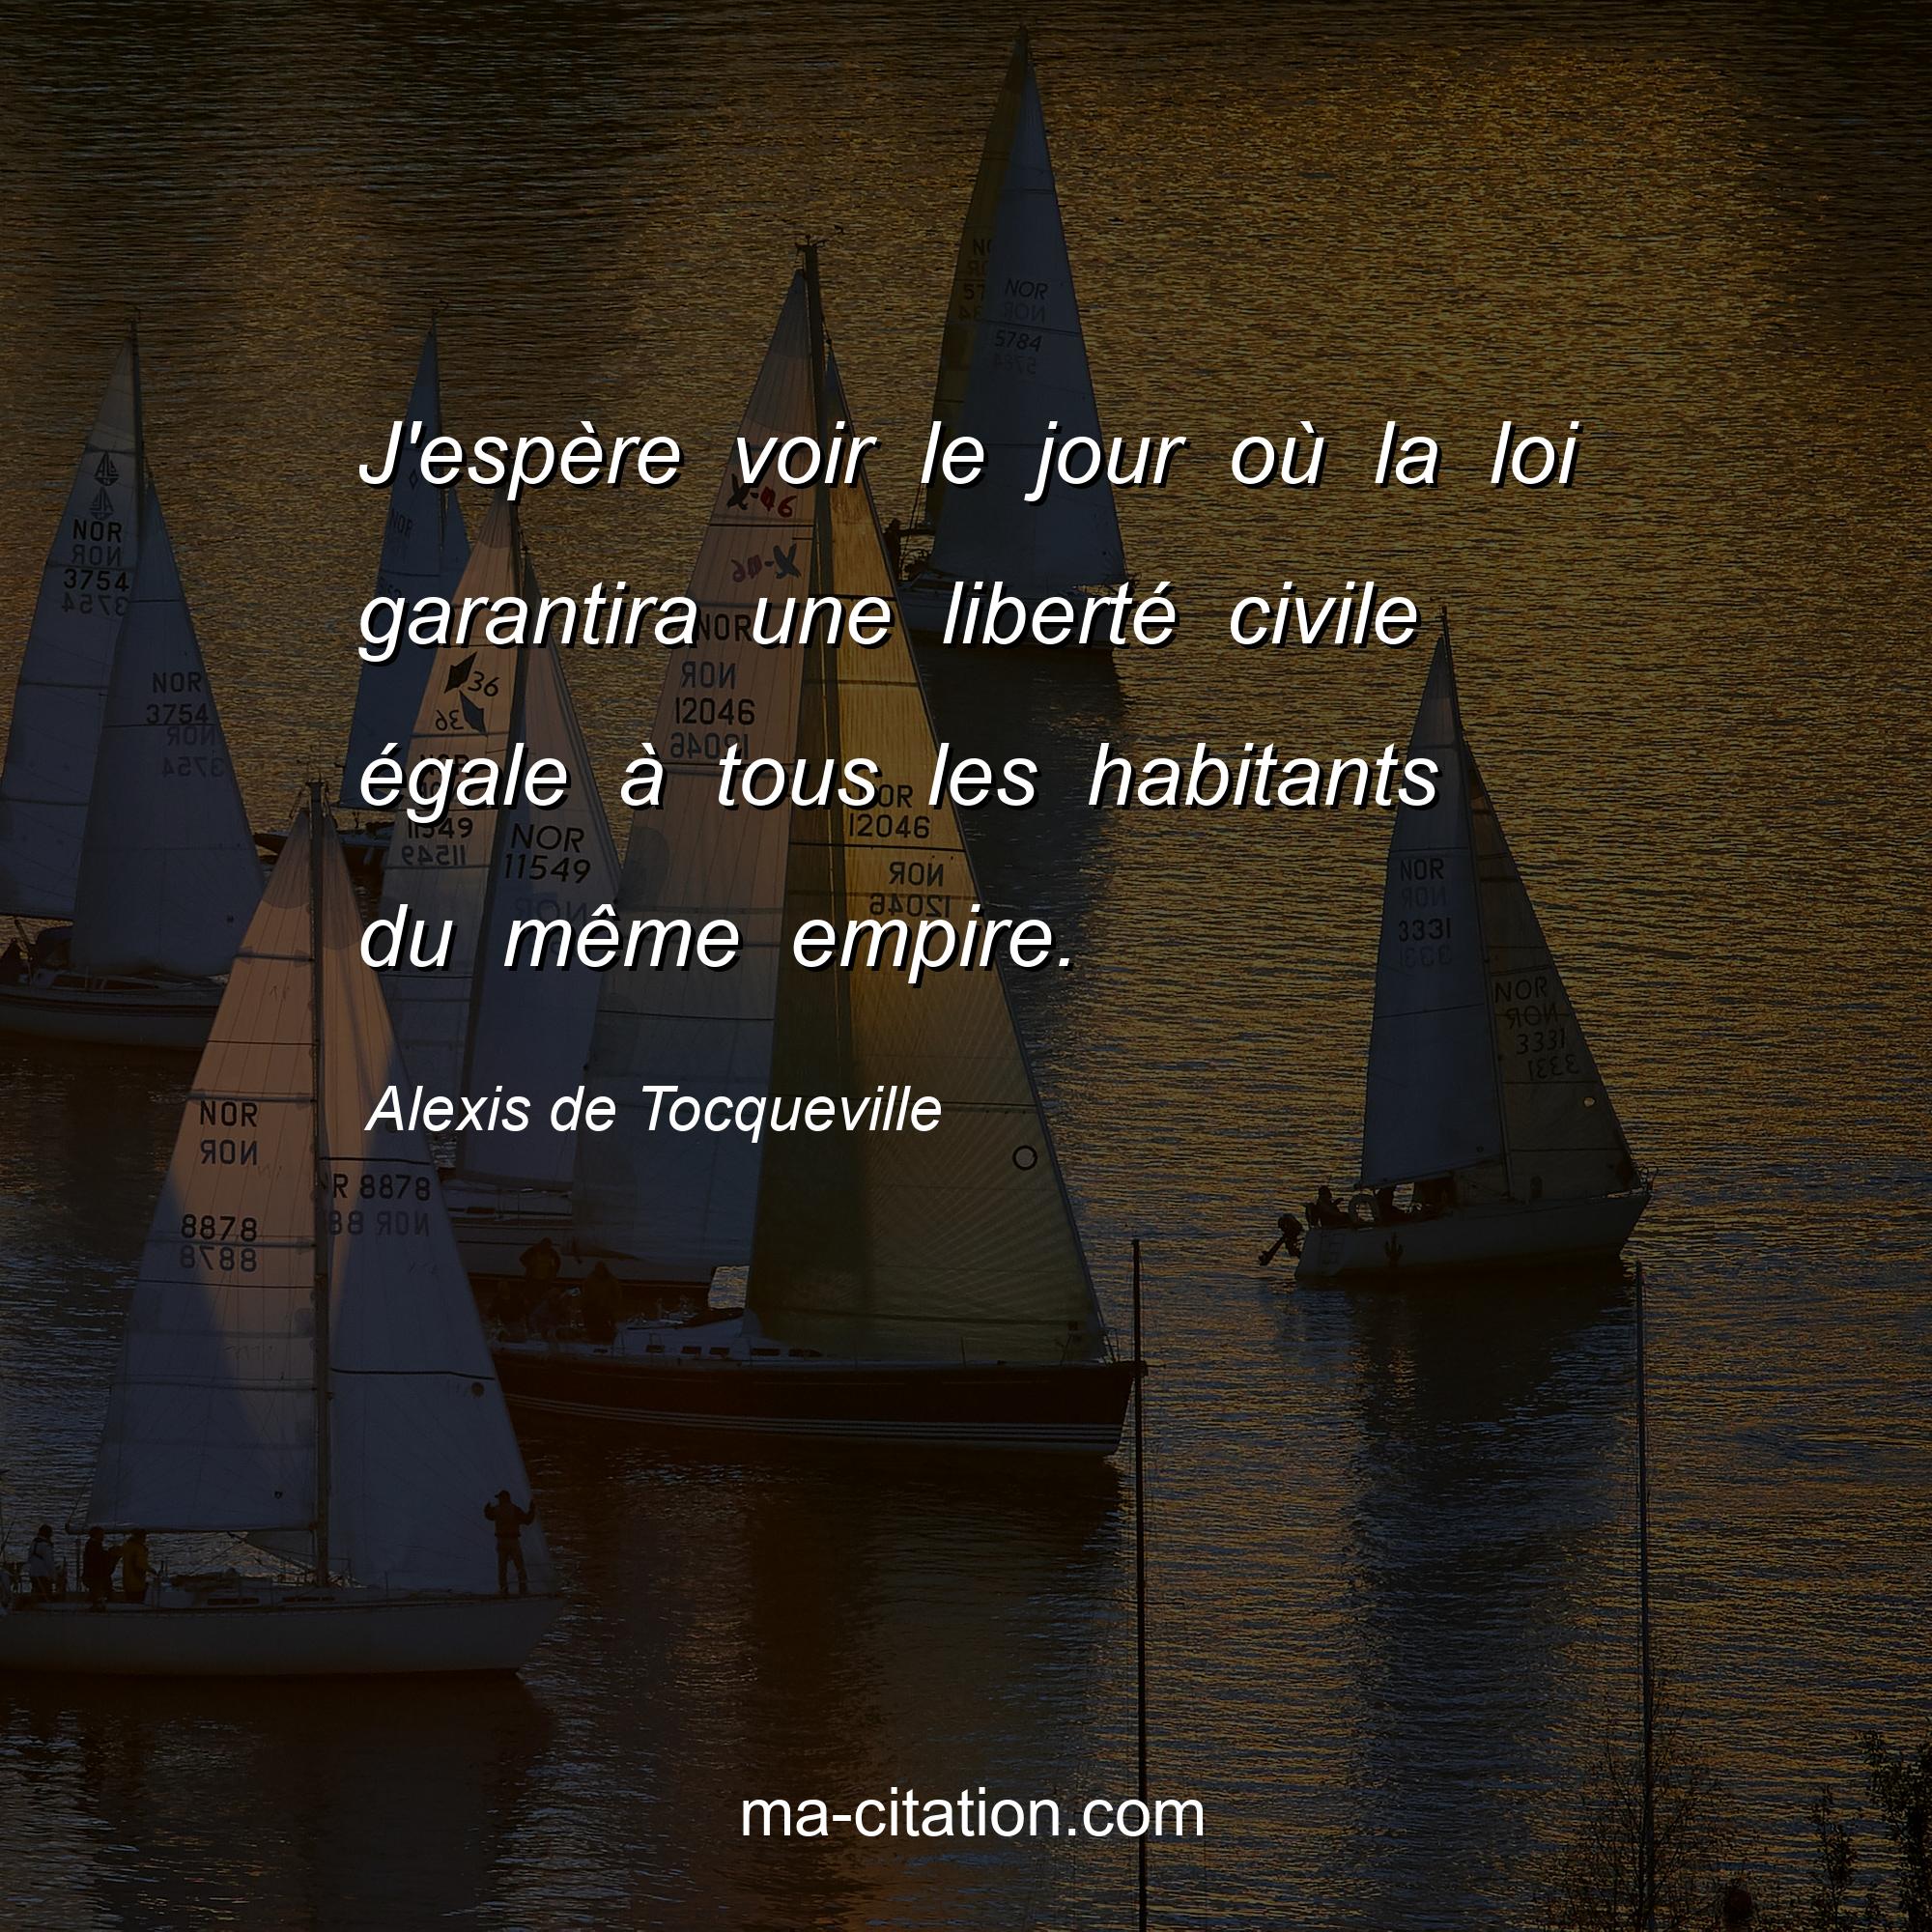 Alexis de Tocqueville : J'espère voir le jour où la loi garantira une liberté civile égale à tous les habitants du même empire.